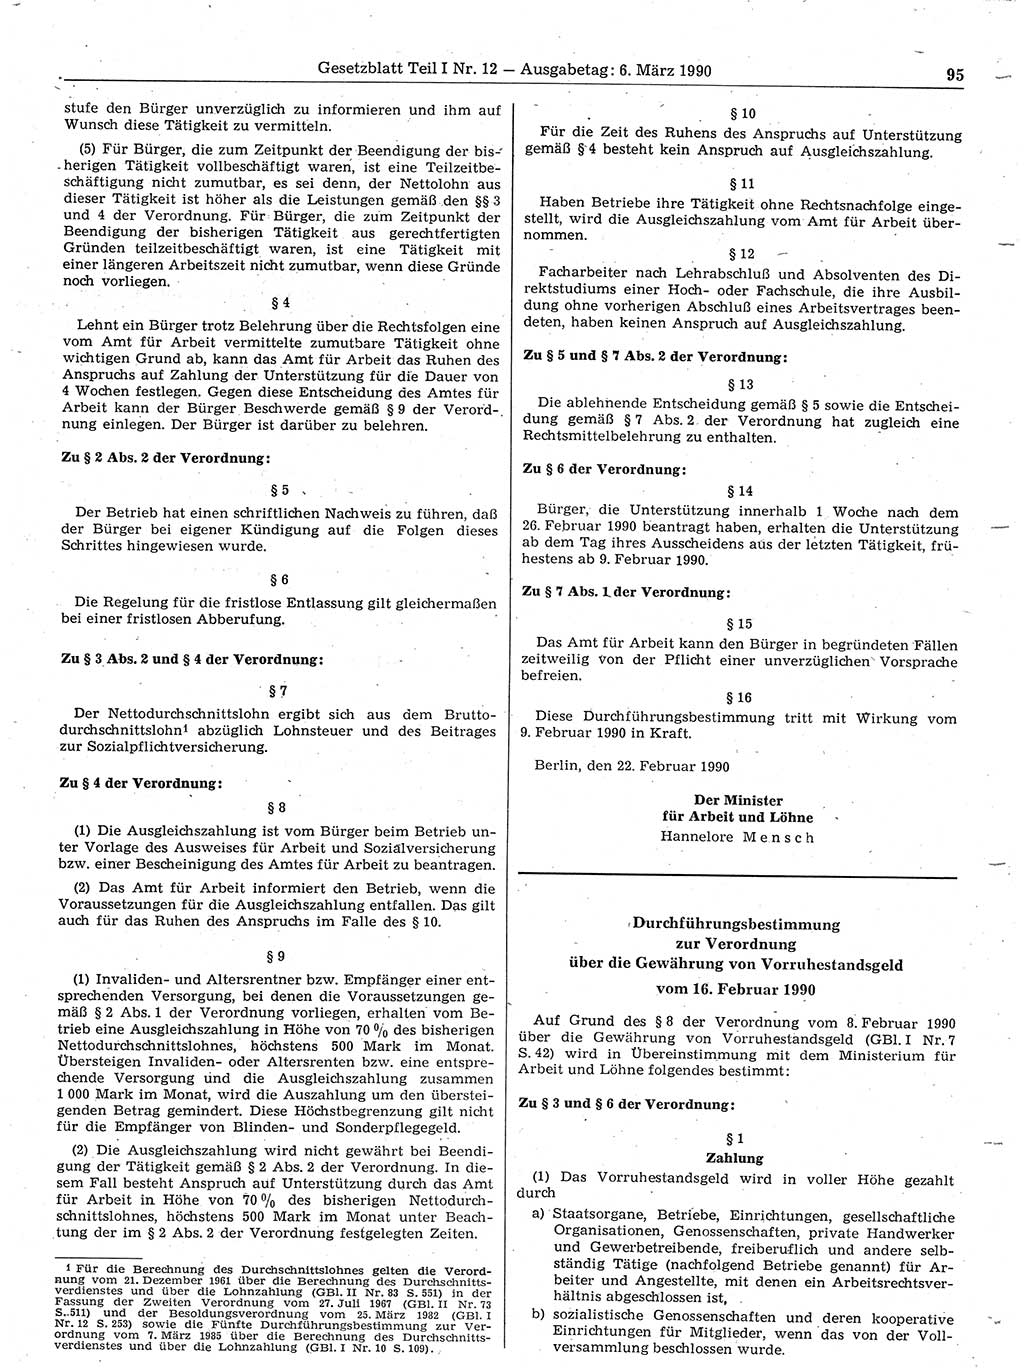 Gesetzblatt (GBl.) der Deutschen Demokratischen Republik (DDR) Teil Ⅰ 1990, Seite 95 (GBl. DDR Ⅰ 1990, S. 95)